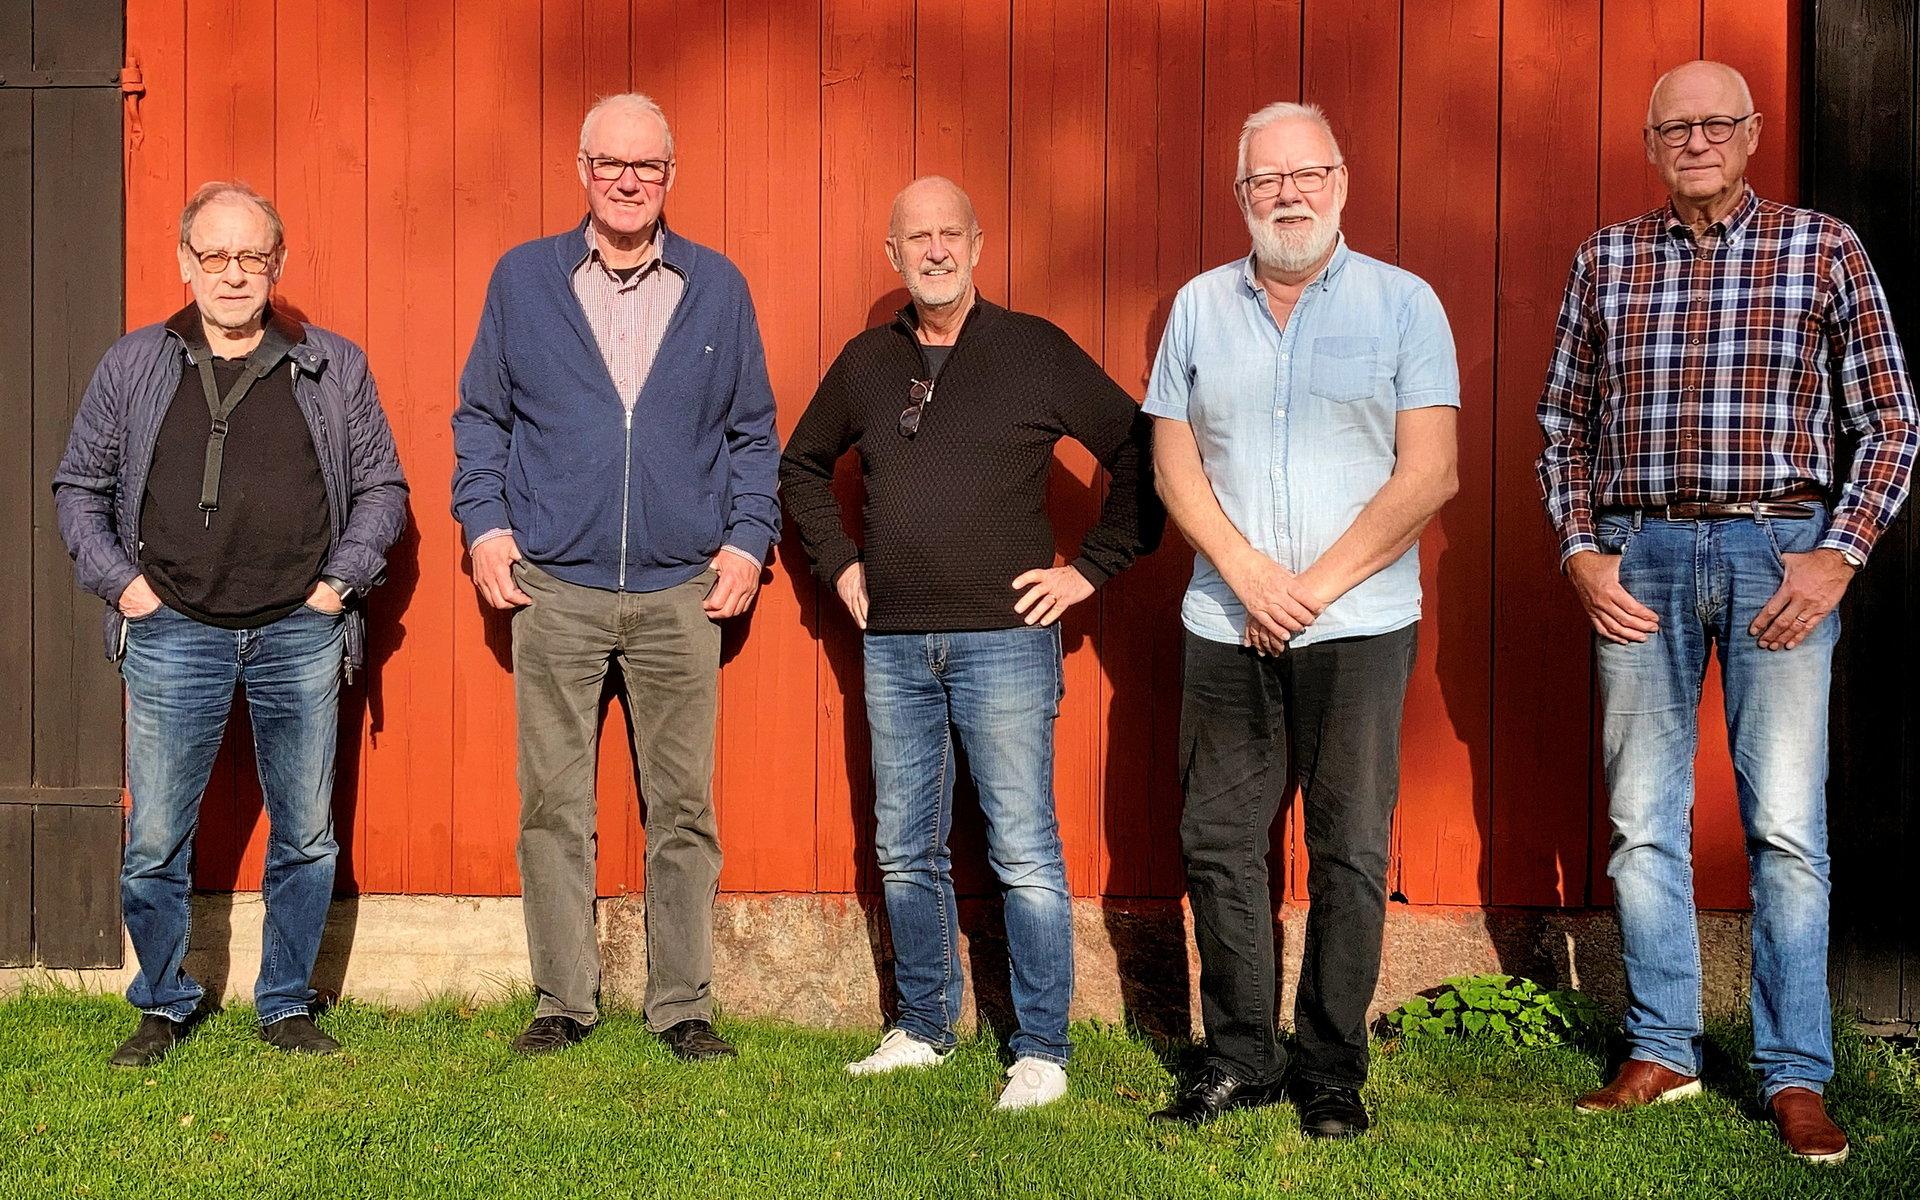 Bandet bildades 1998. Av originalmedlemmarna finns Benny Johansson och Calle Pettersson kvar. Övriga har tillkommit under årens lopp.